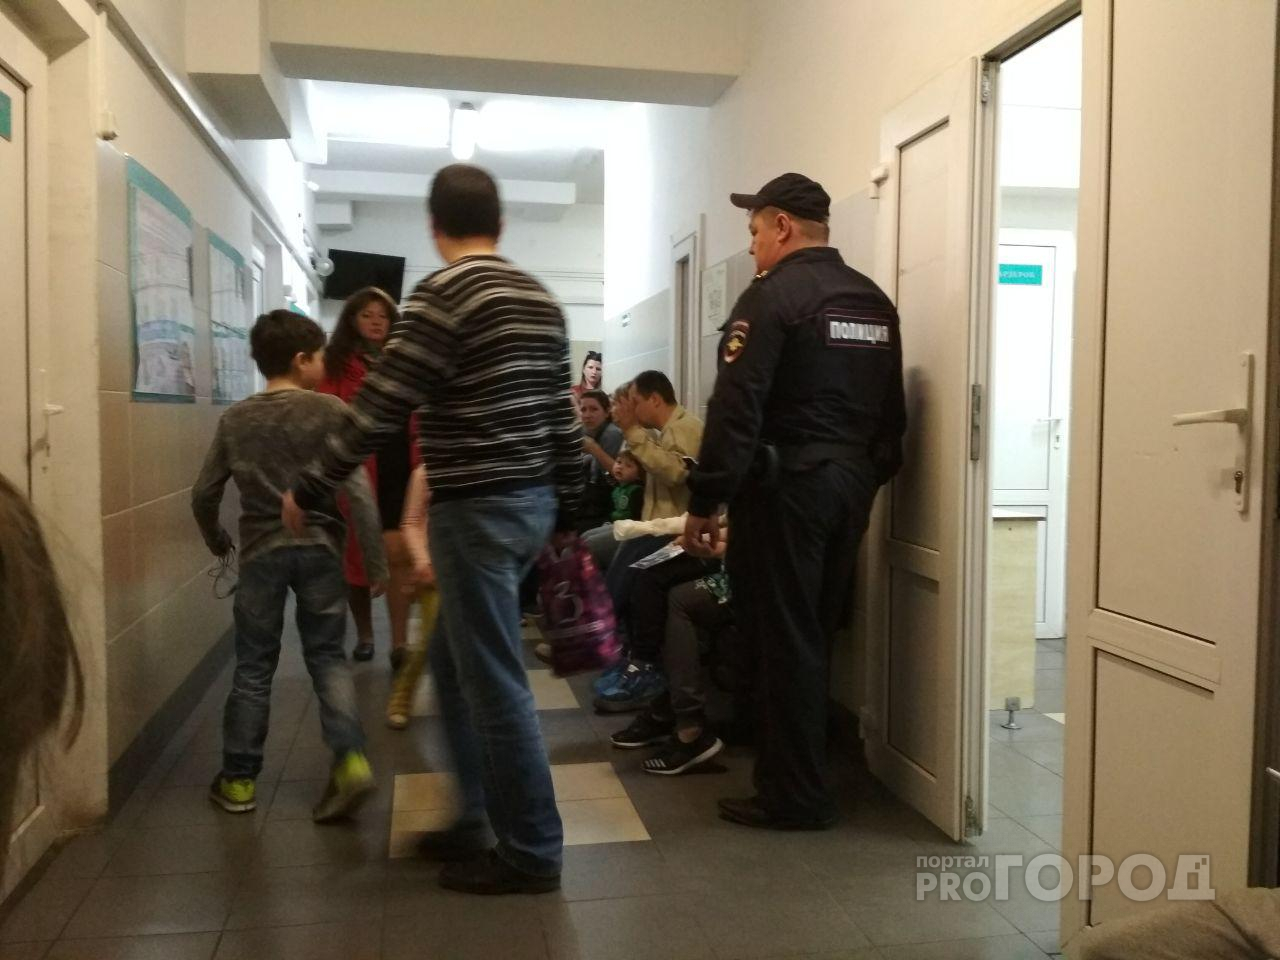 "Врачи станут санитарами": медики готовятся к сокращениям в больницах Ярославля